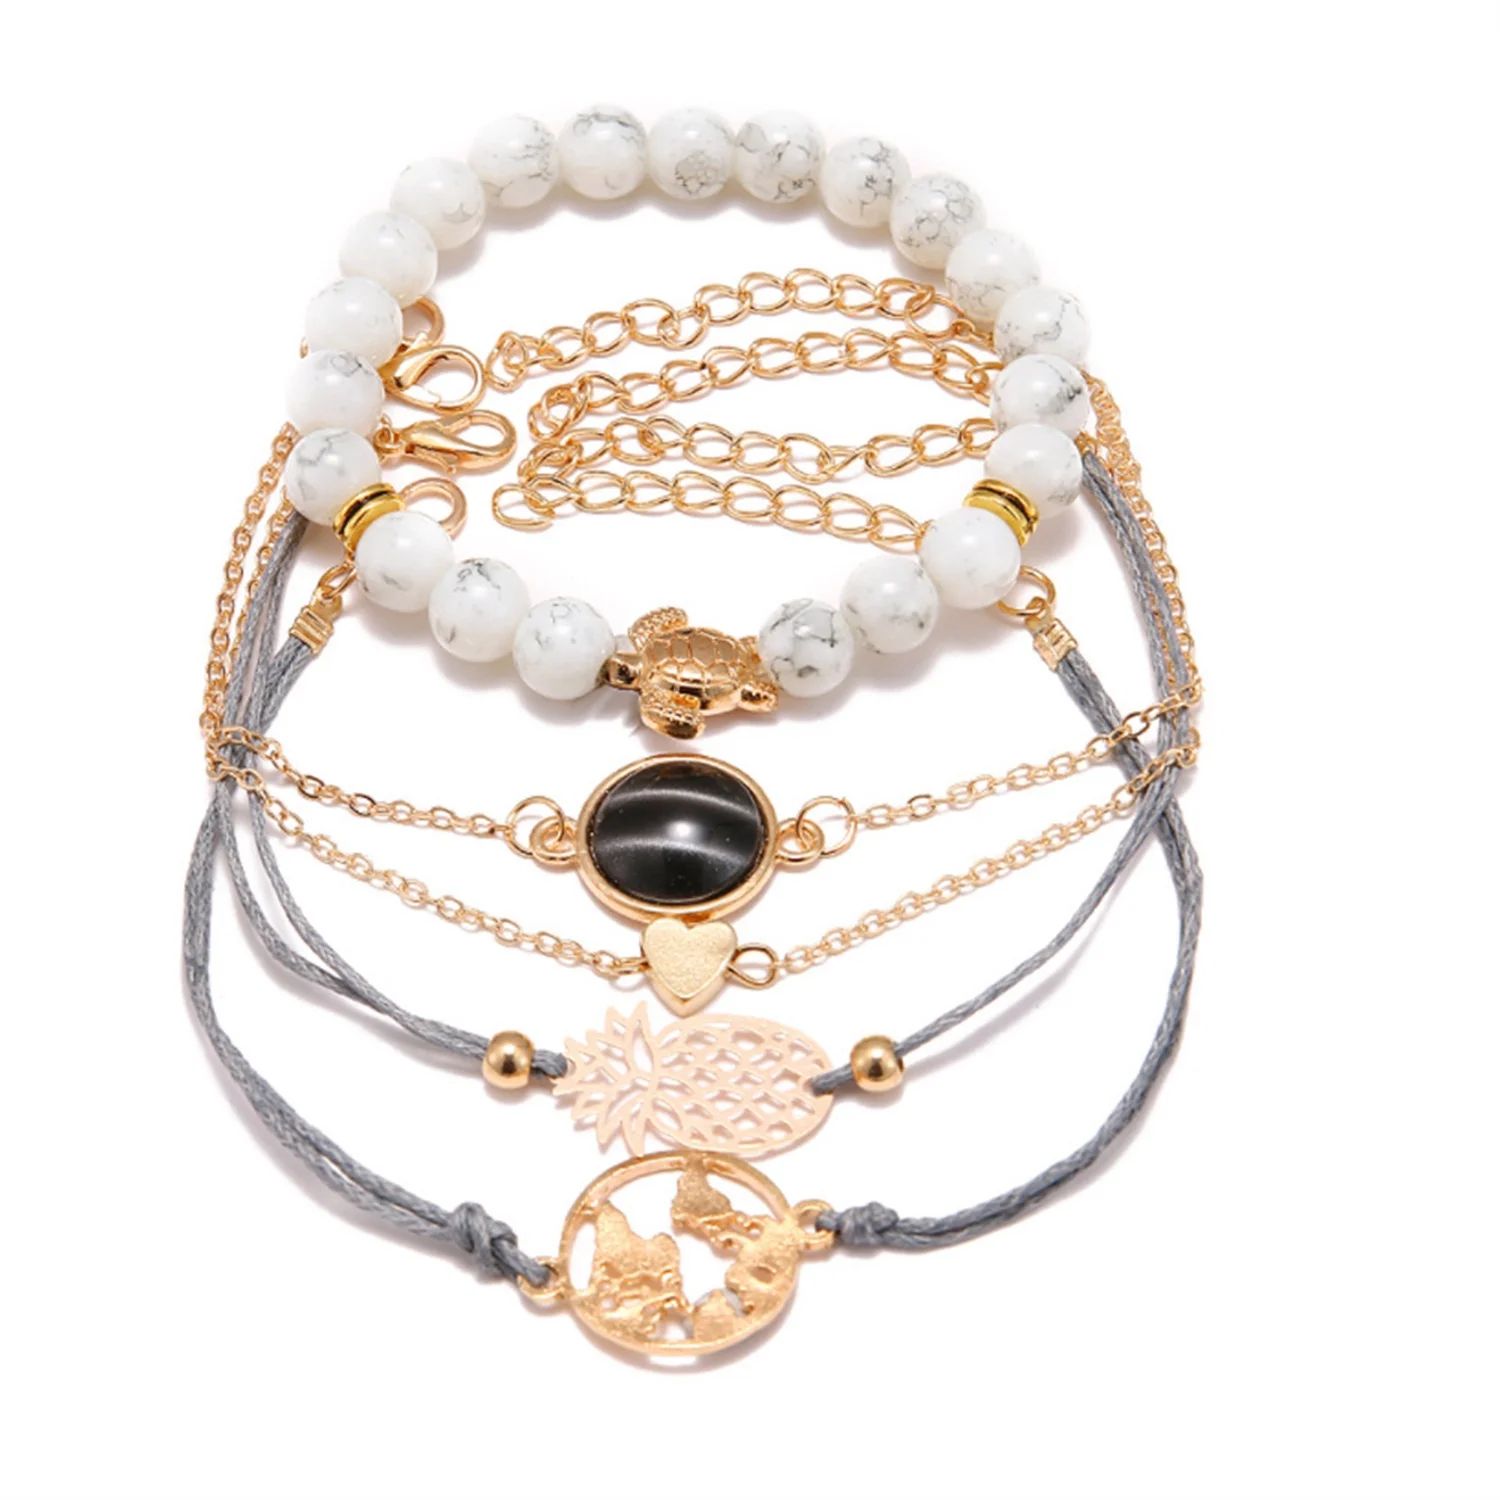 IEFSHINY Stackable Bracelets For Women Multilayer Boho Bracelet Sets Beads Metal Chain Rope Adjus... | Walmart (US)